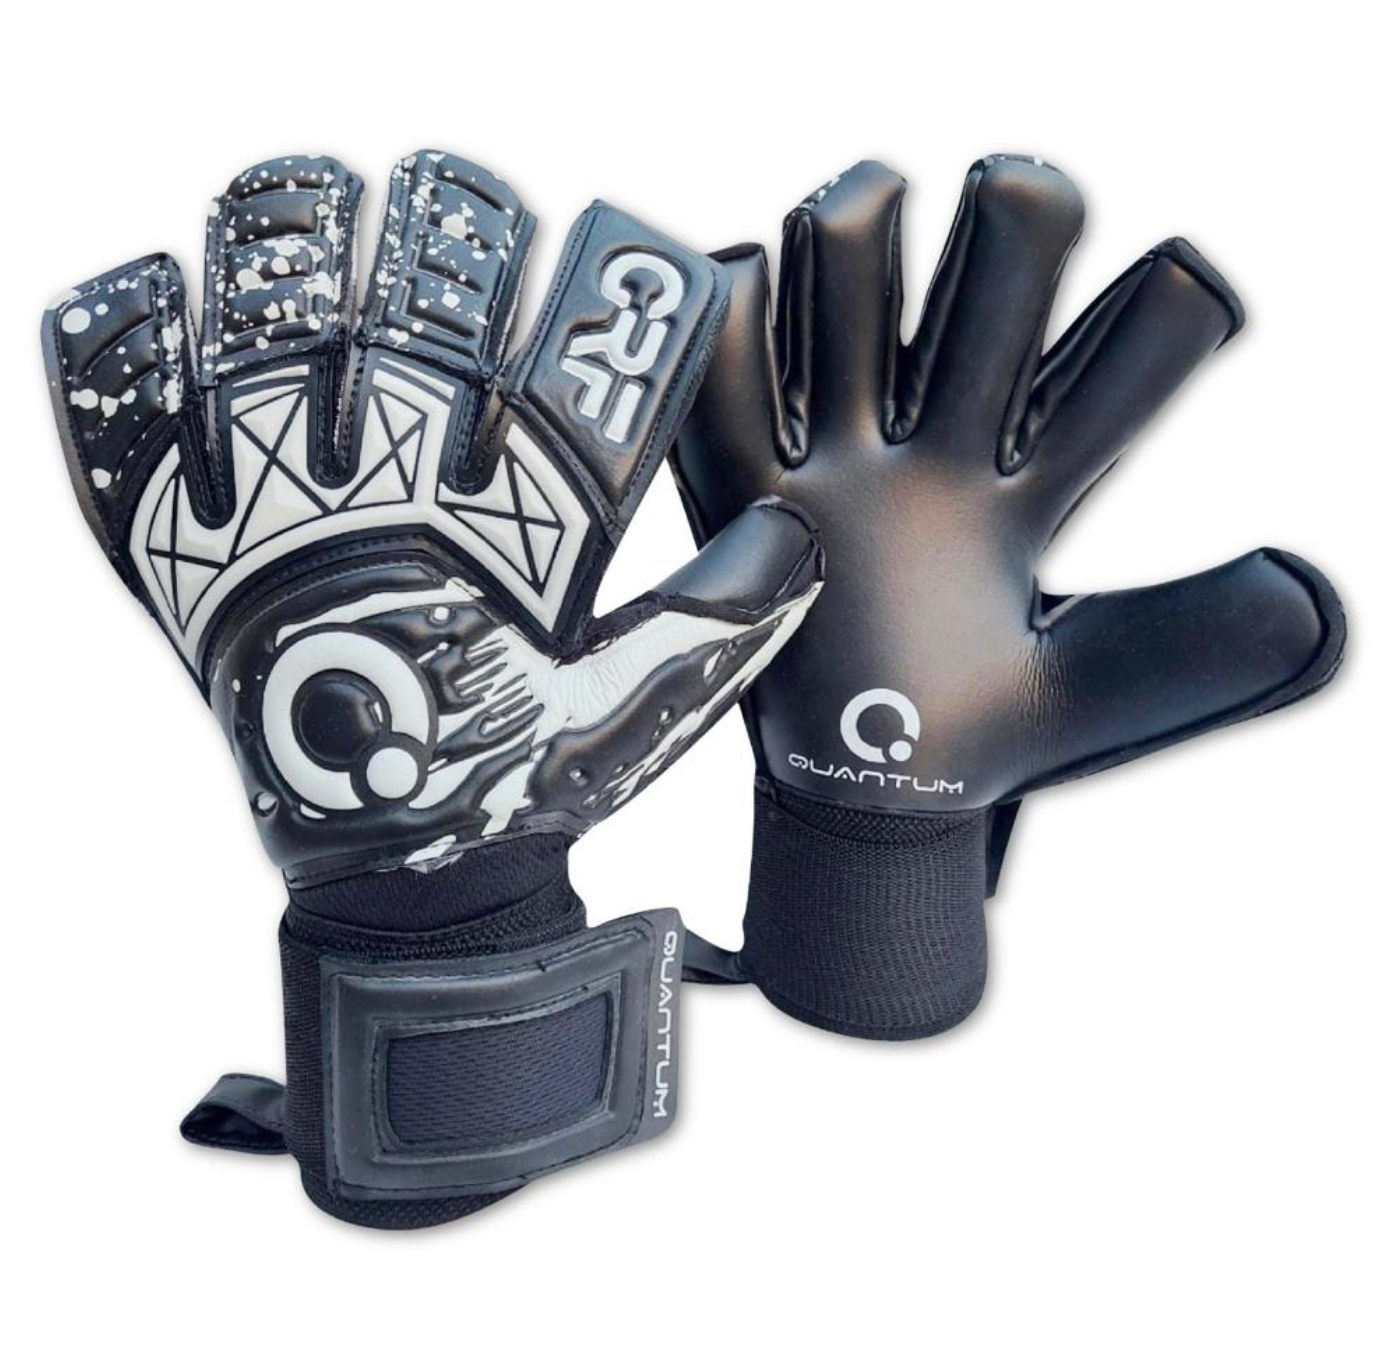 GRF Quantum Pro GK Gloves